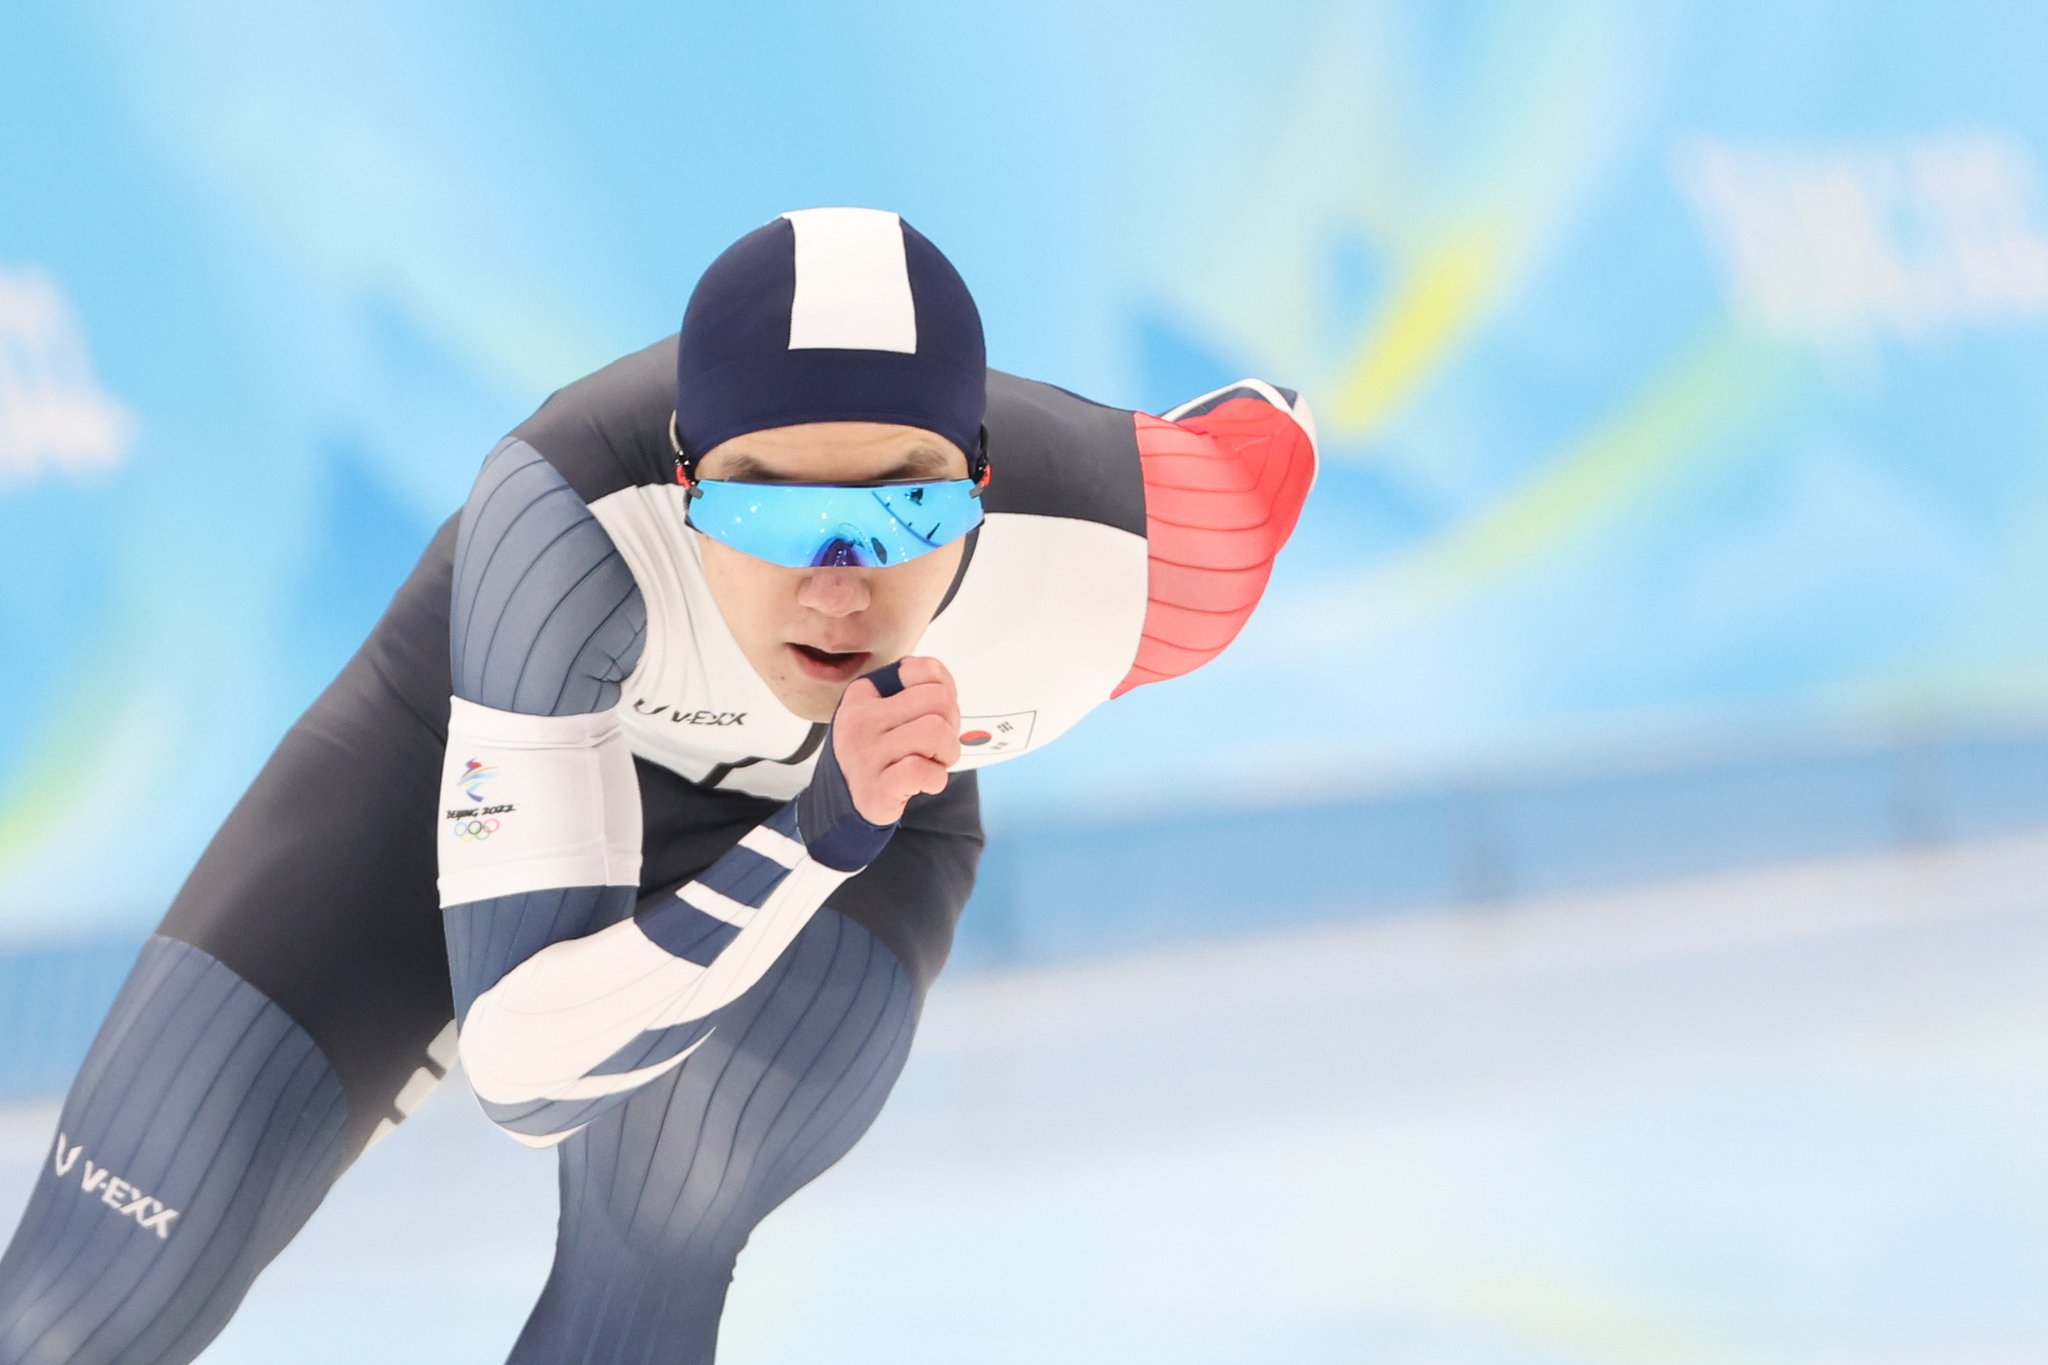 18일 오후 베이징 국립 스피드스케이트장에서 열린 2022 베이징 겨울올림픽 스피드스케이팅 남자 1000m 경기에 출전한 차민규가 질주하고 있다. 김경록 기자 